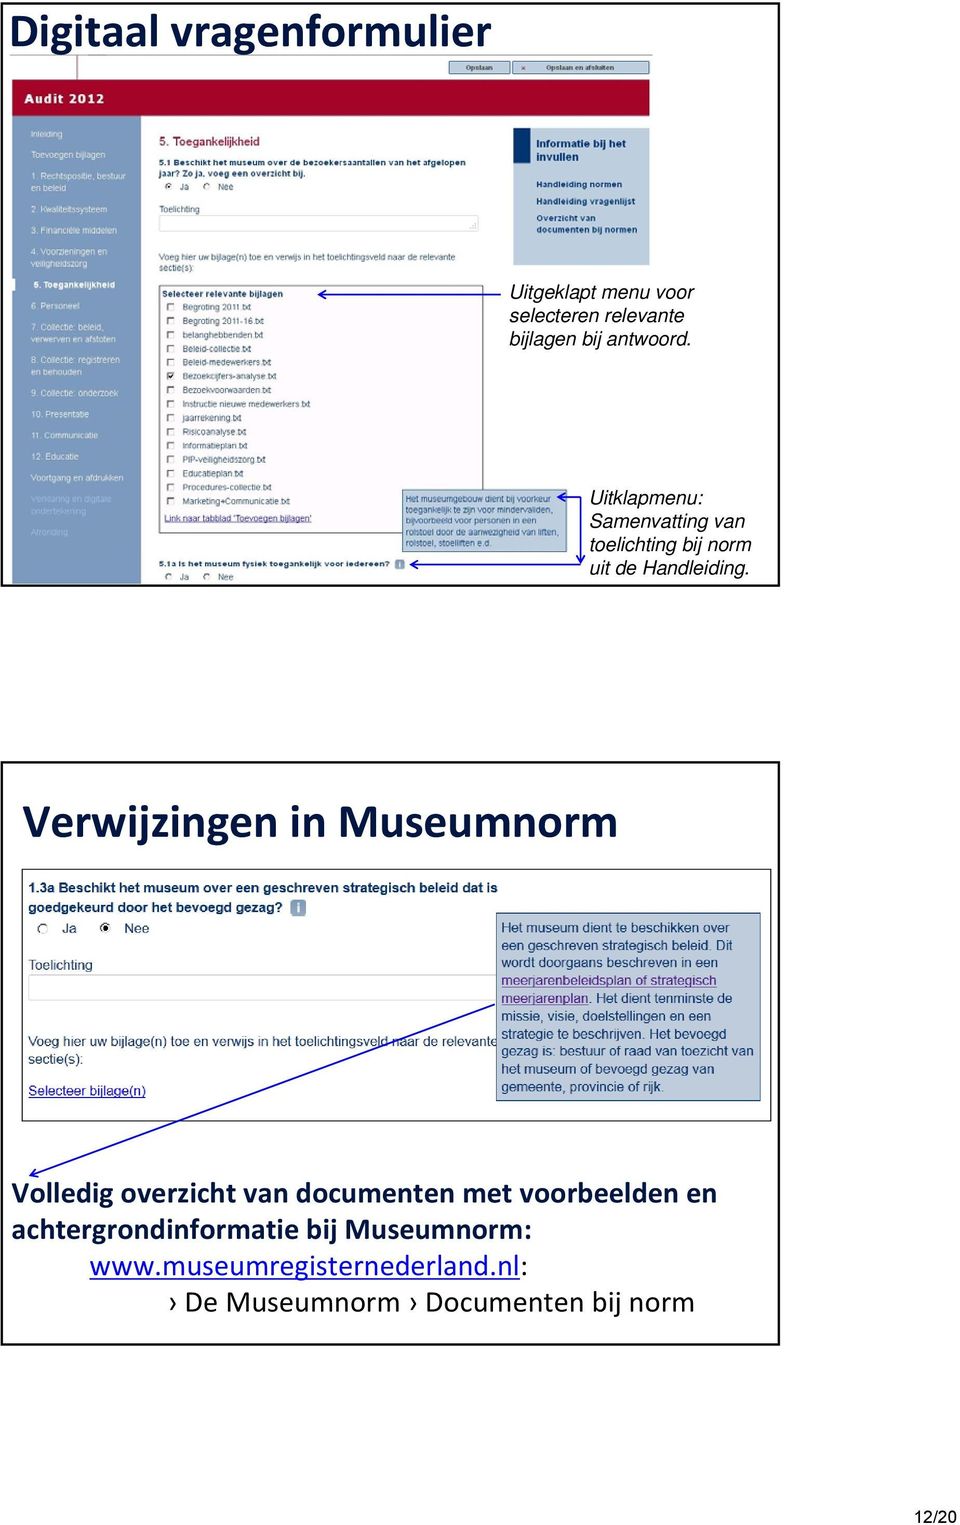 Verwijzingen in Museumnorm Volledig overzicht vn documenten met vooreelden en